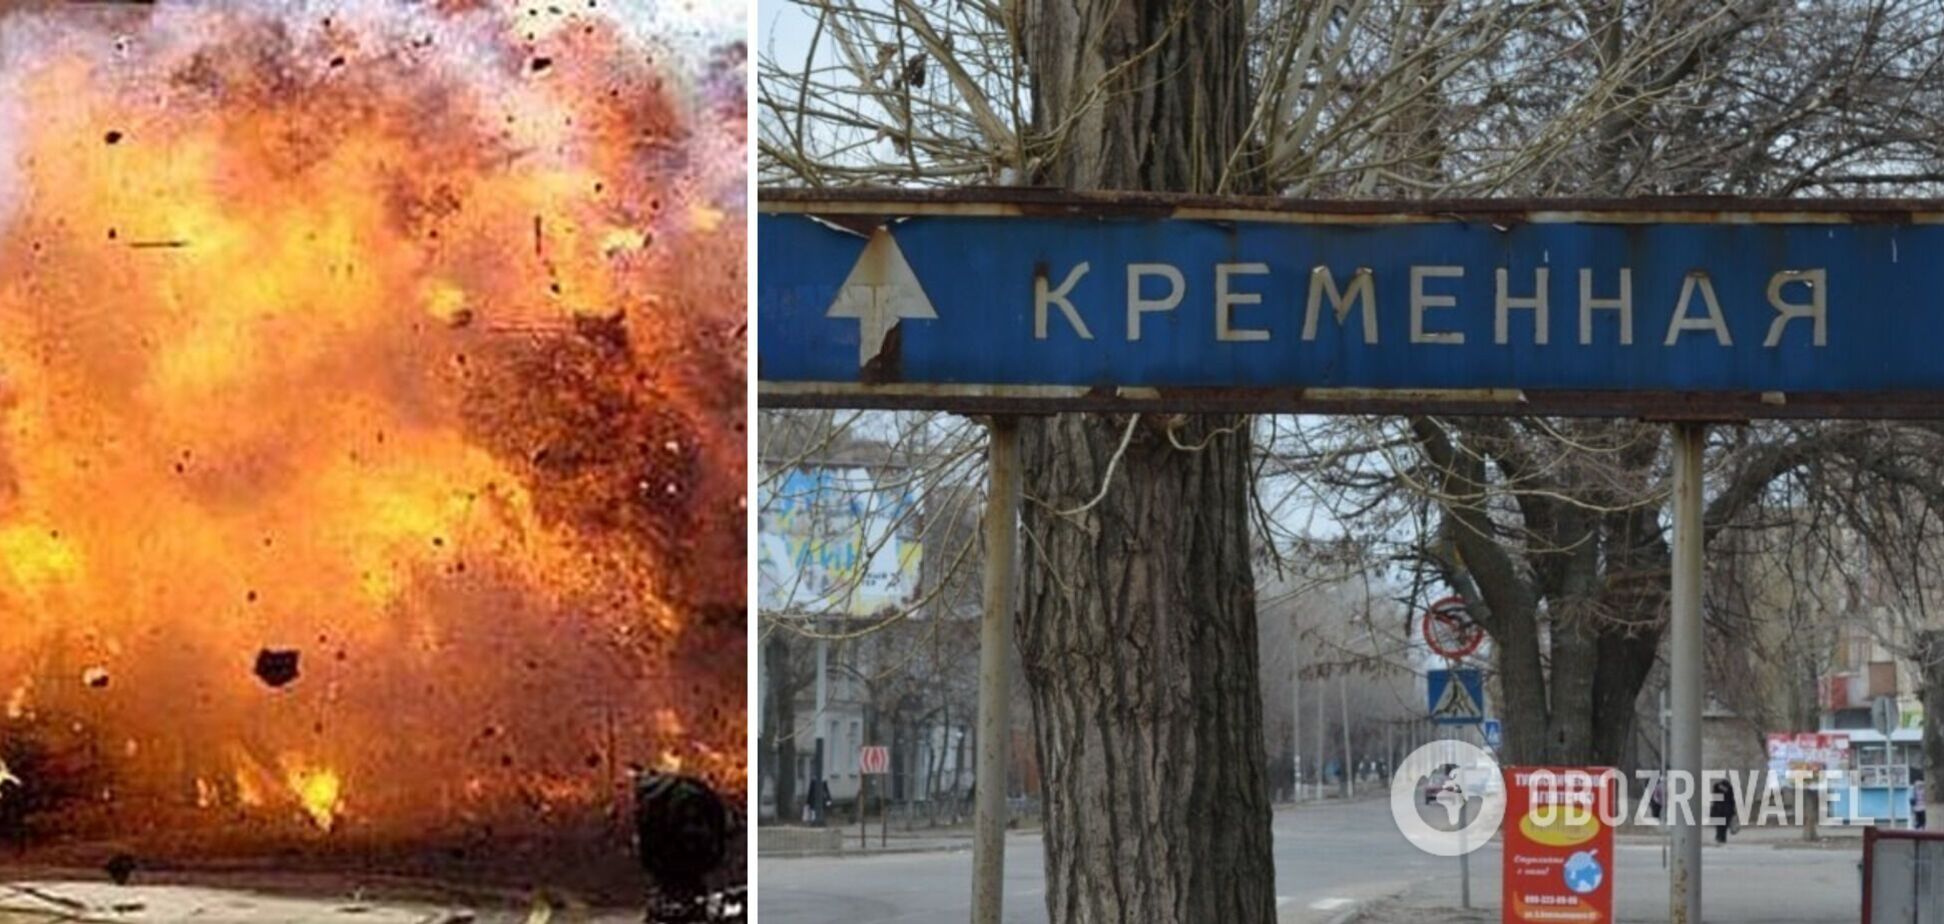 Геращенко показал последствия взрыва в Кременной: предатели должны знать, что их ждет